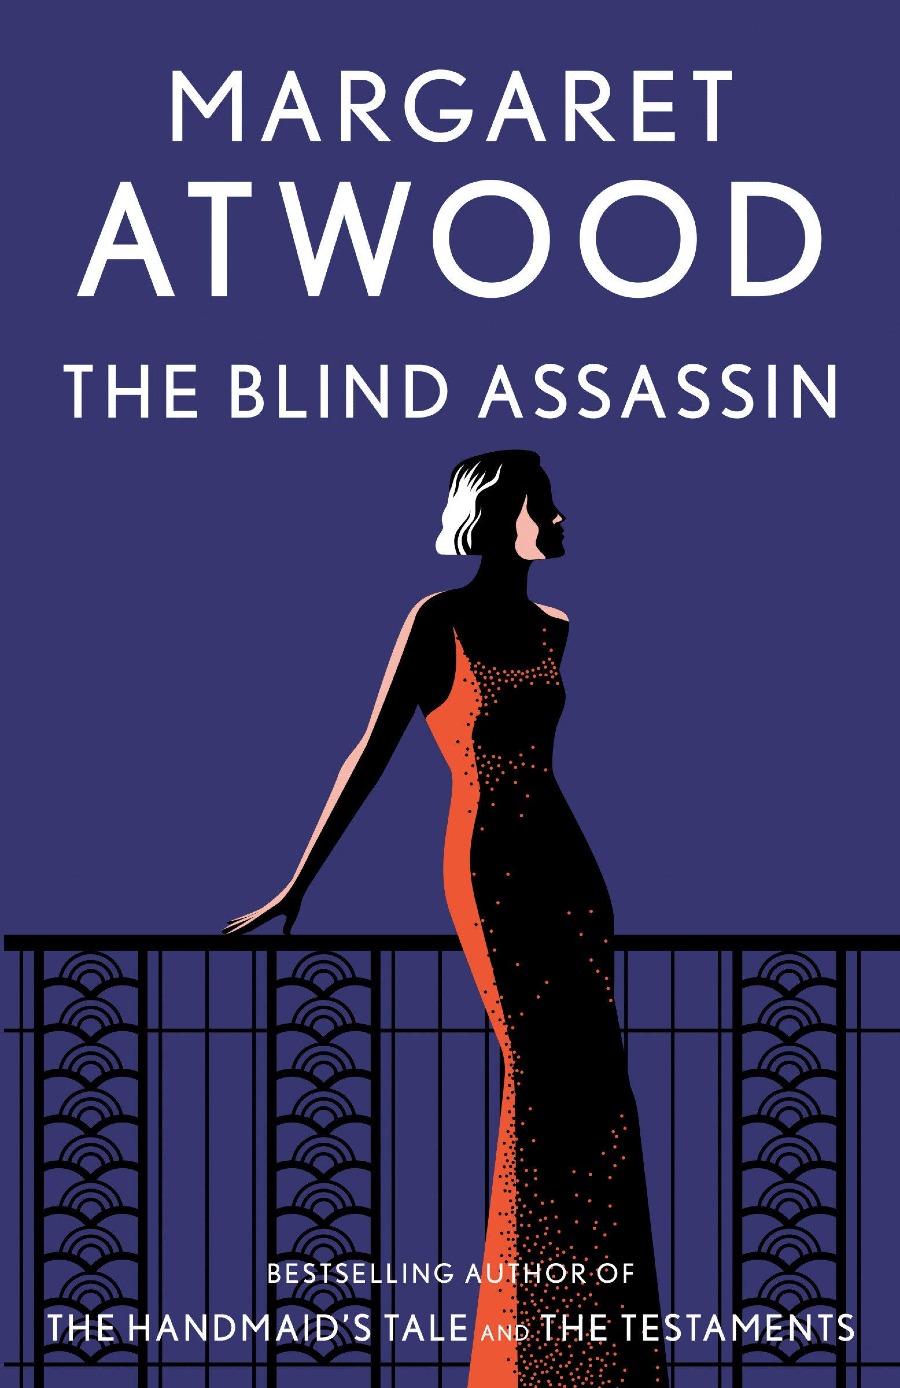 blind assassin